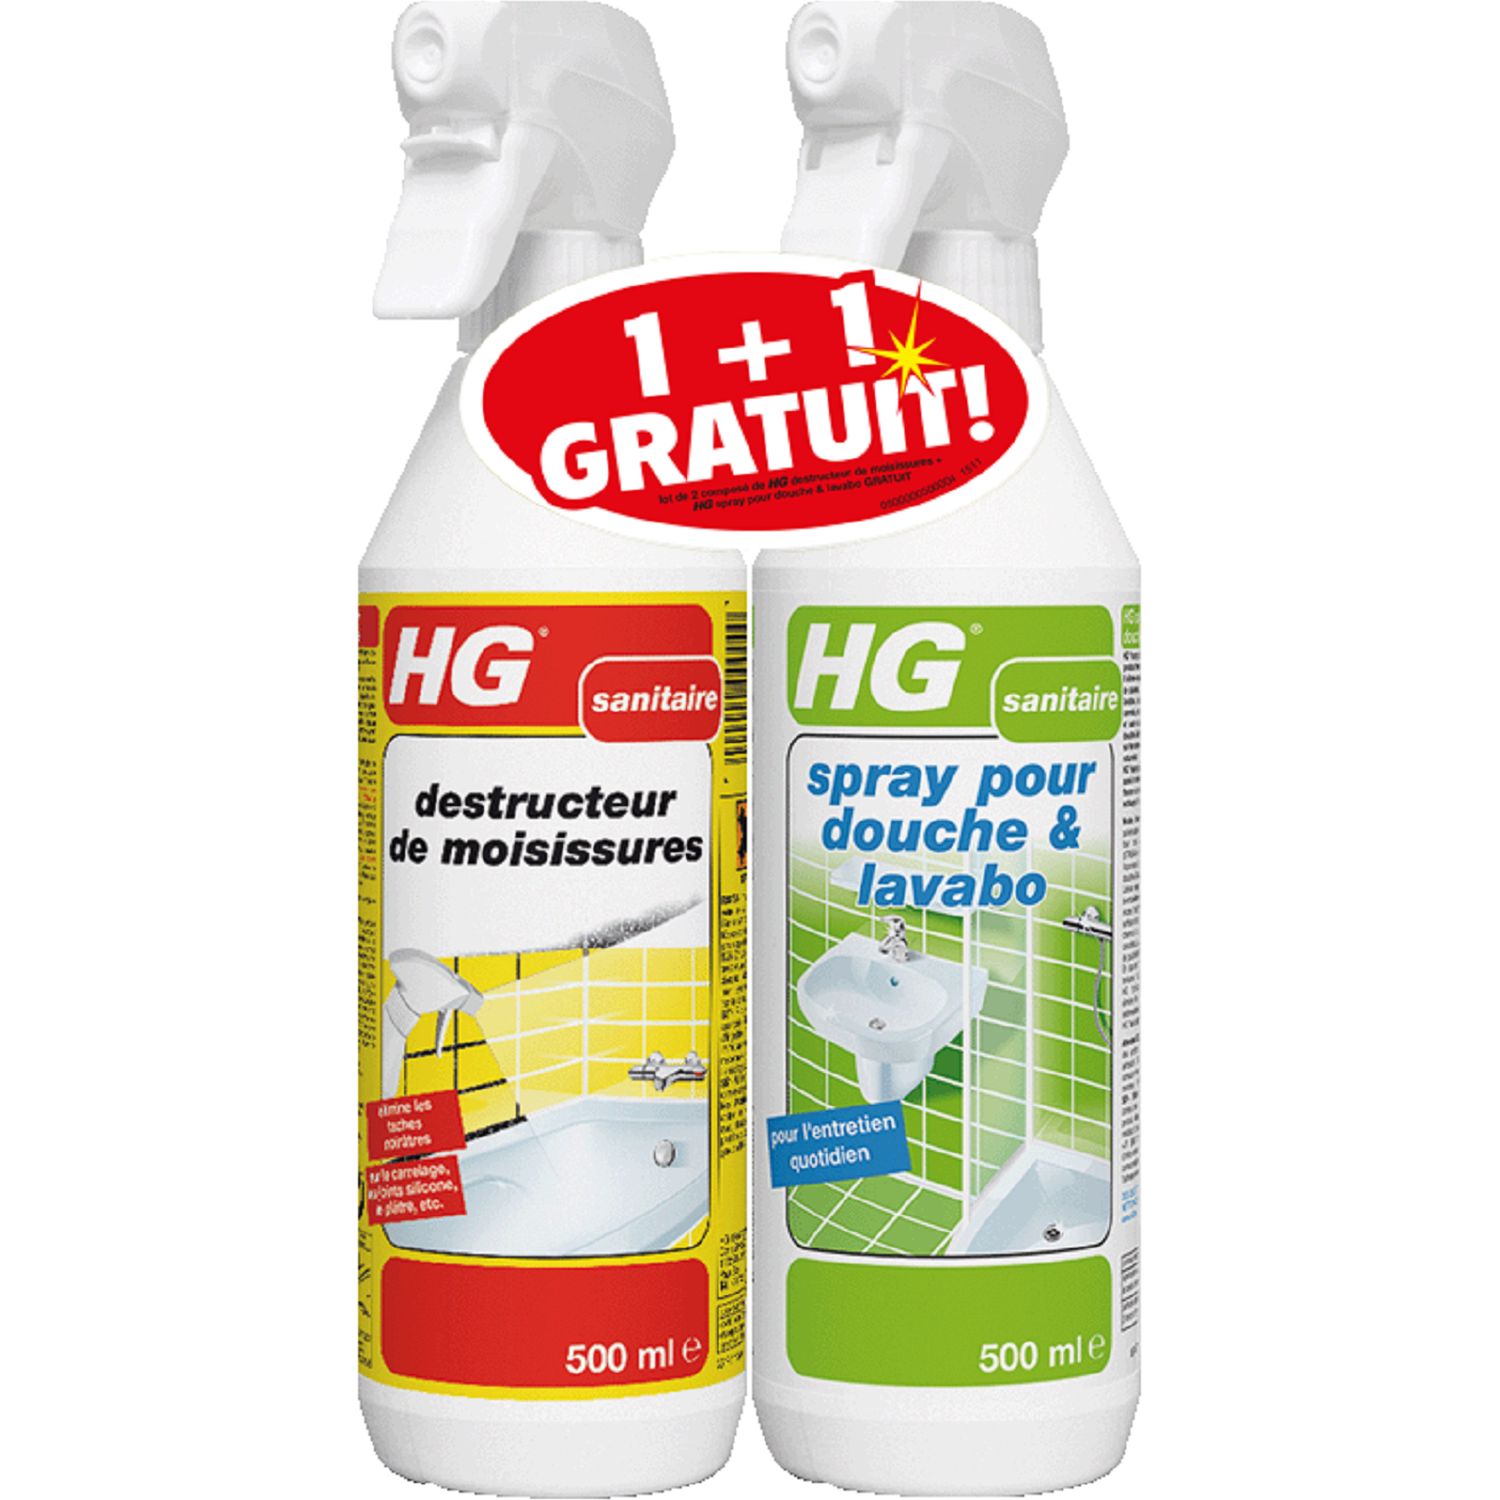 HG HG Spray destructeur de moisissures & spray douche & lavabo 2x500ml 2  produits 2x500ml pas cher 